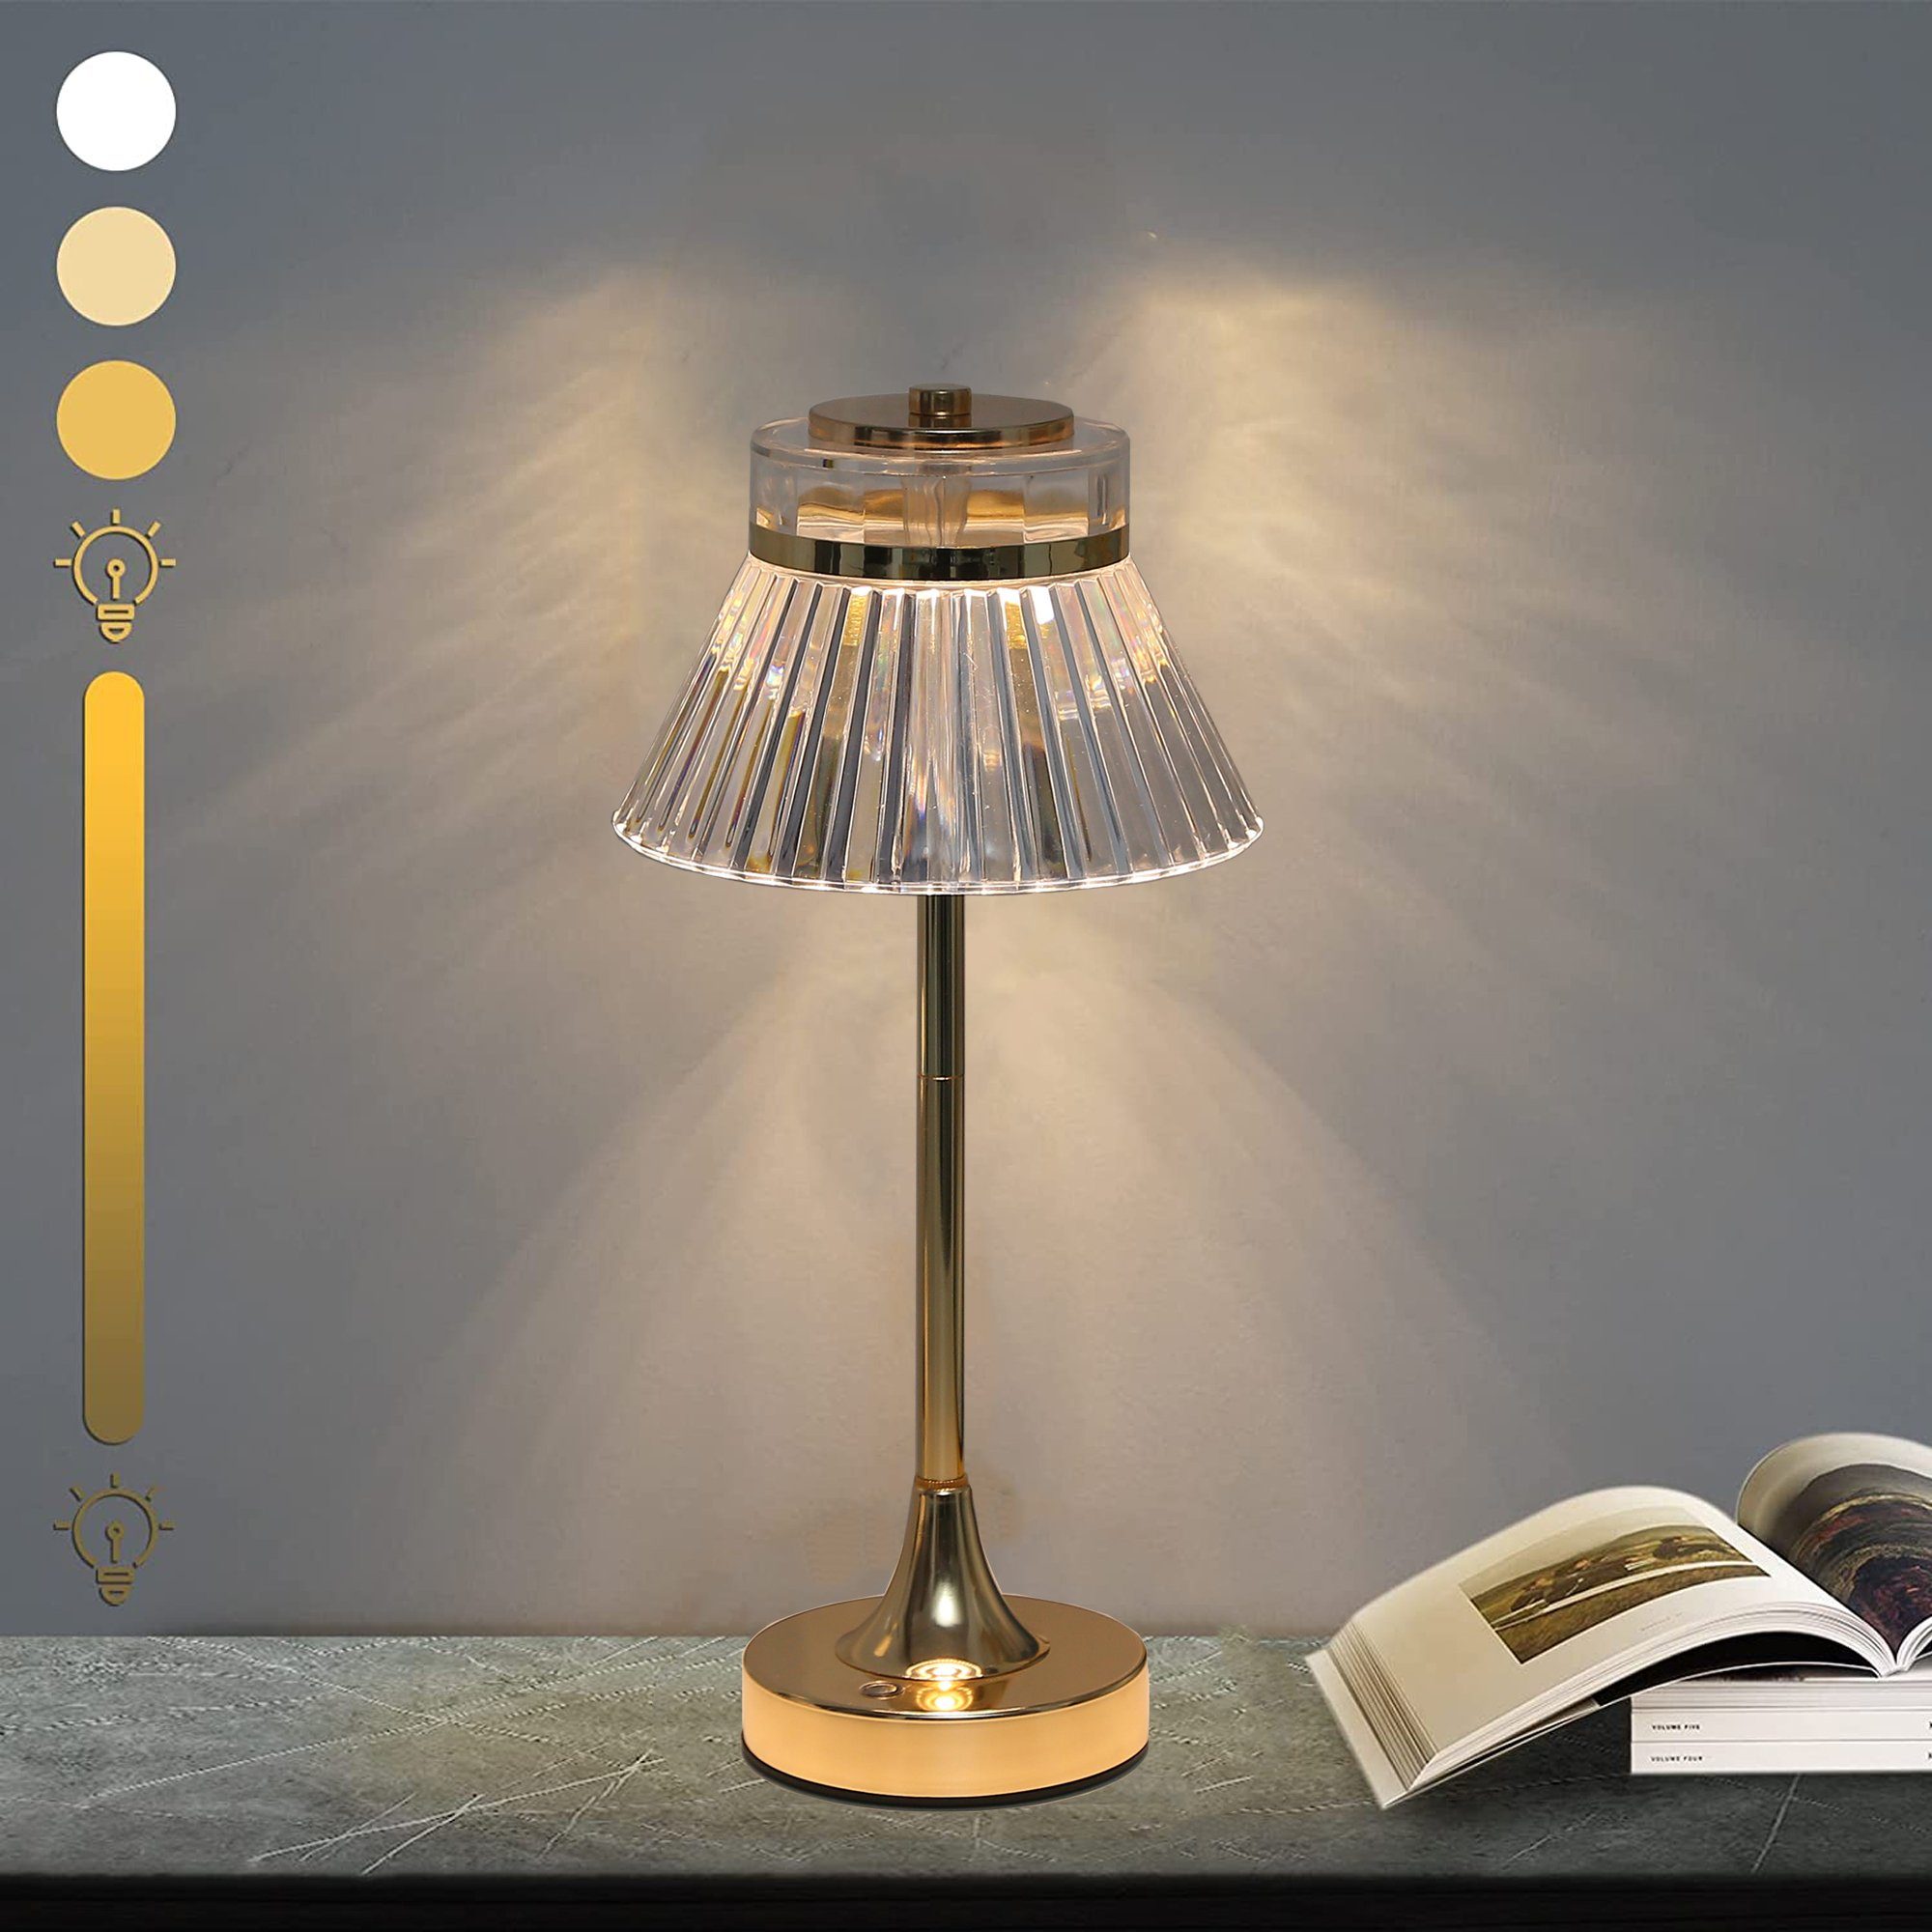 KUGI LED Nachttischlampe Touching Control Crystal Table Lamp,LED Tischlampe  aus Kristall, Schnurlose Tischlampe mit Touch Control & USB Anschluss,  3-Wege dimmbare Nachttischlampe, Dekorative LED Lampe für Schlafzimmer,  Wohnzimmer